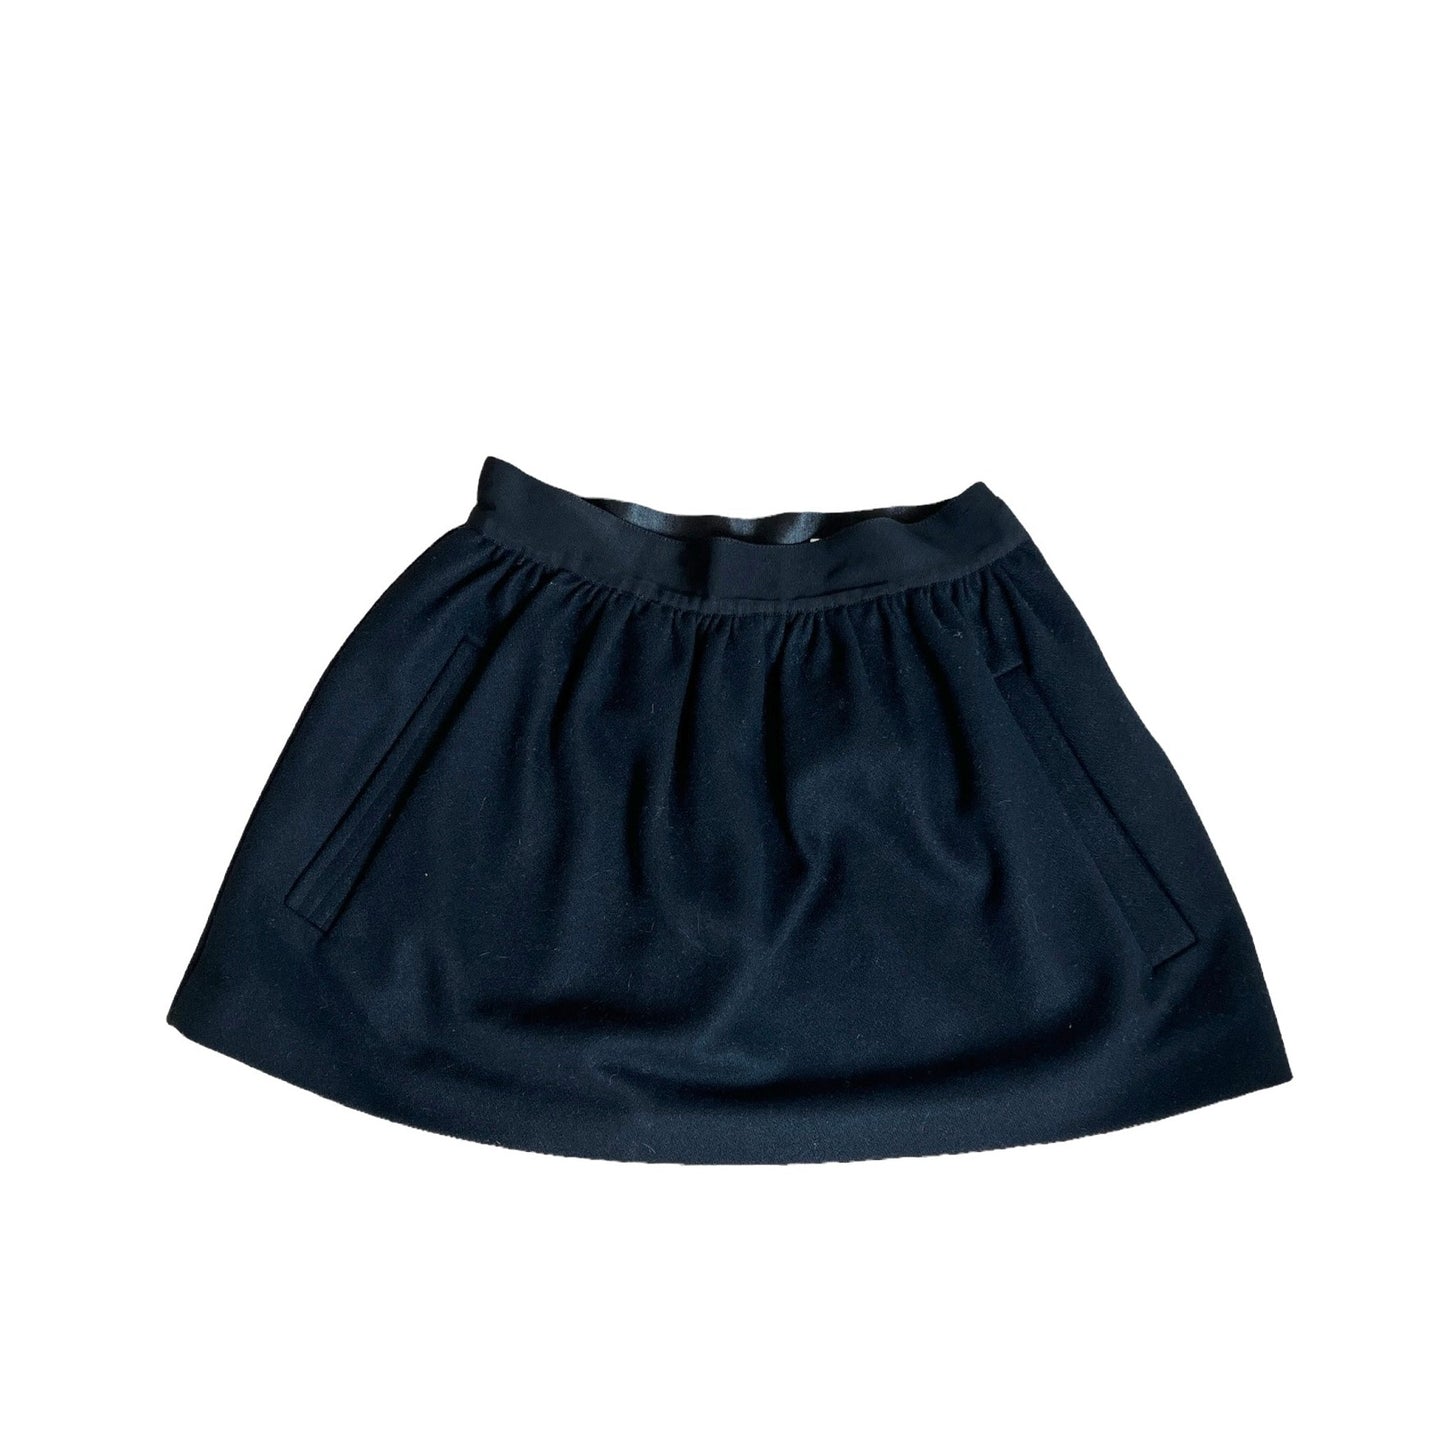 Black Mini Skirt - S